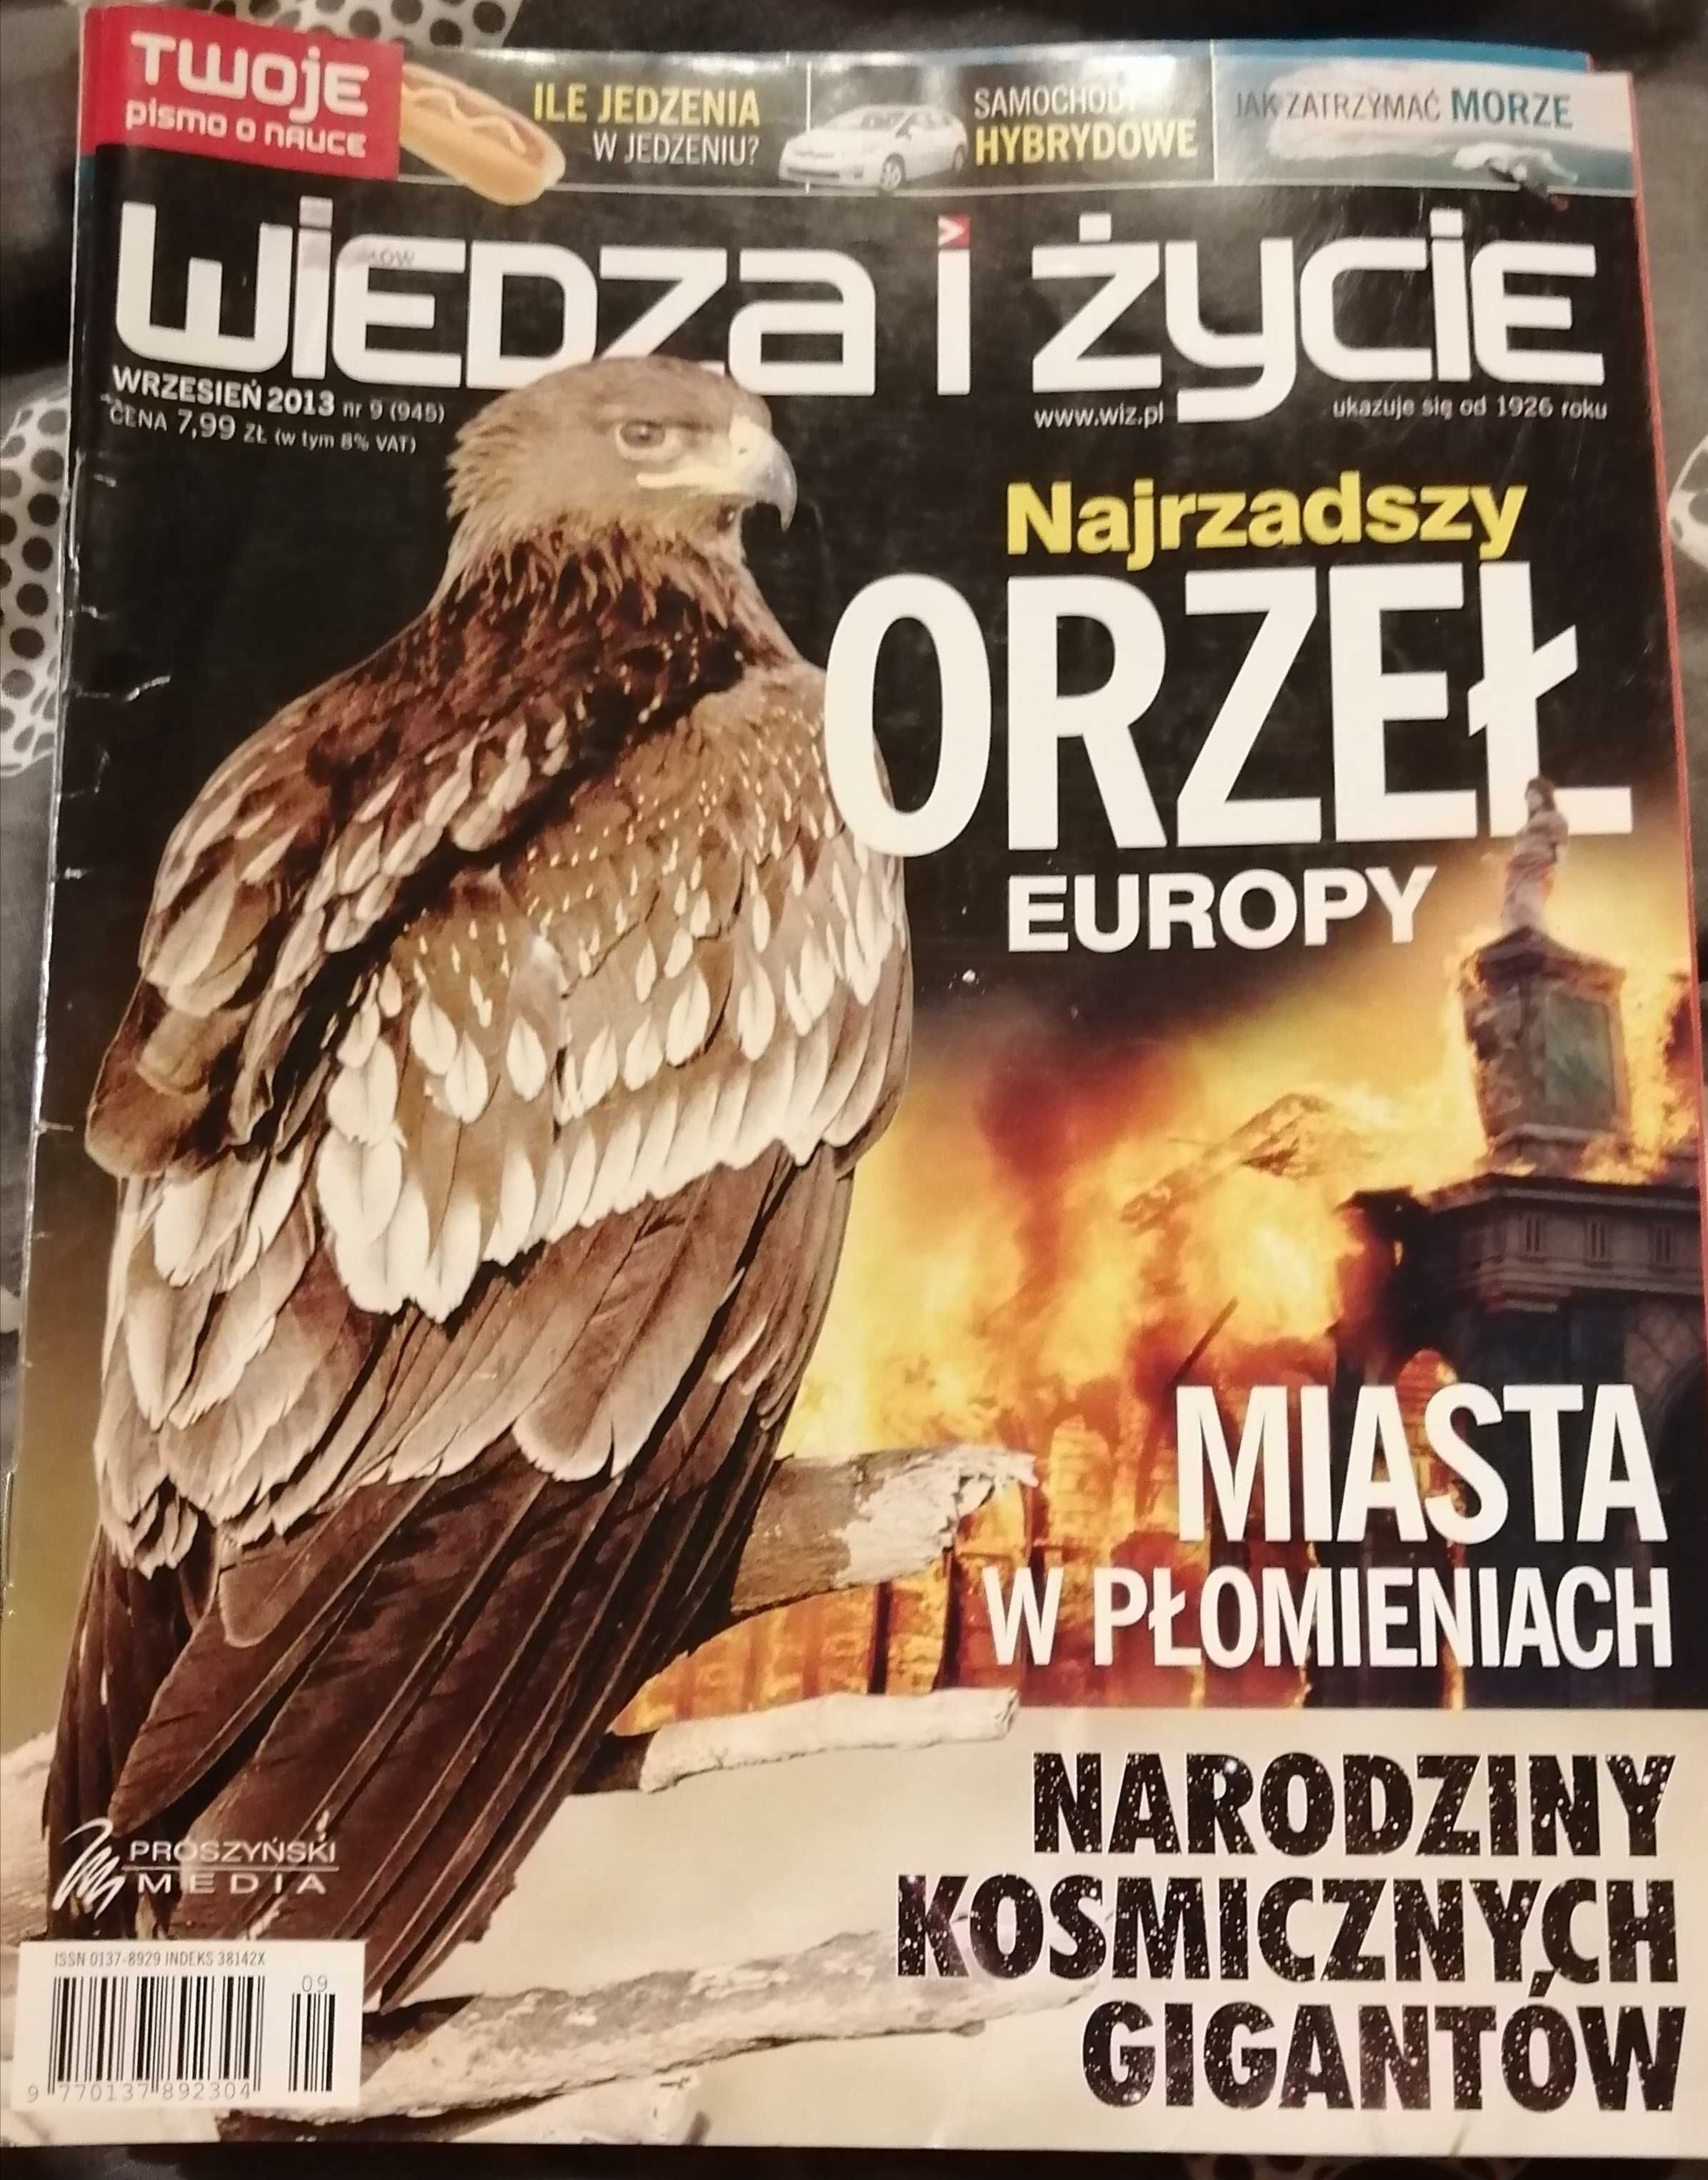 польская книга, журналы на польском